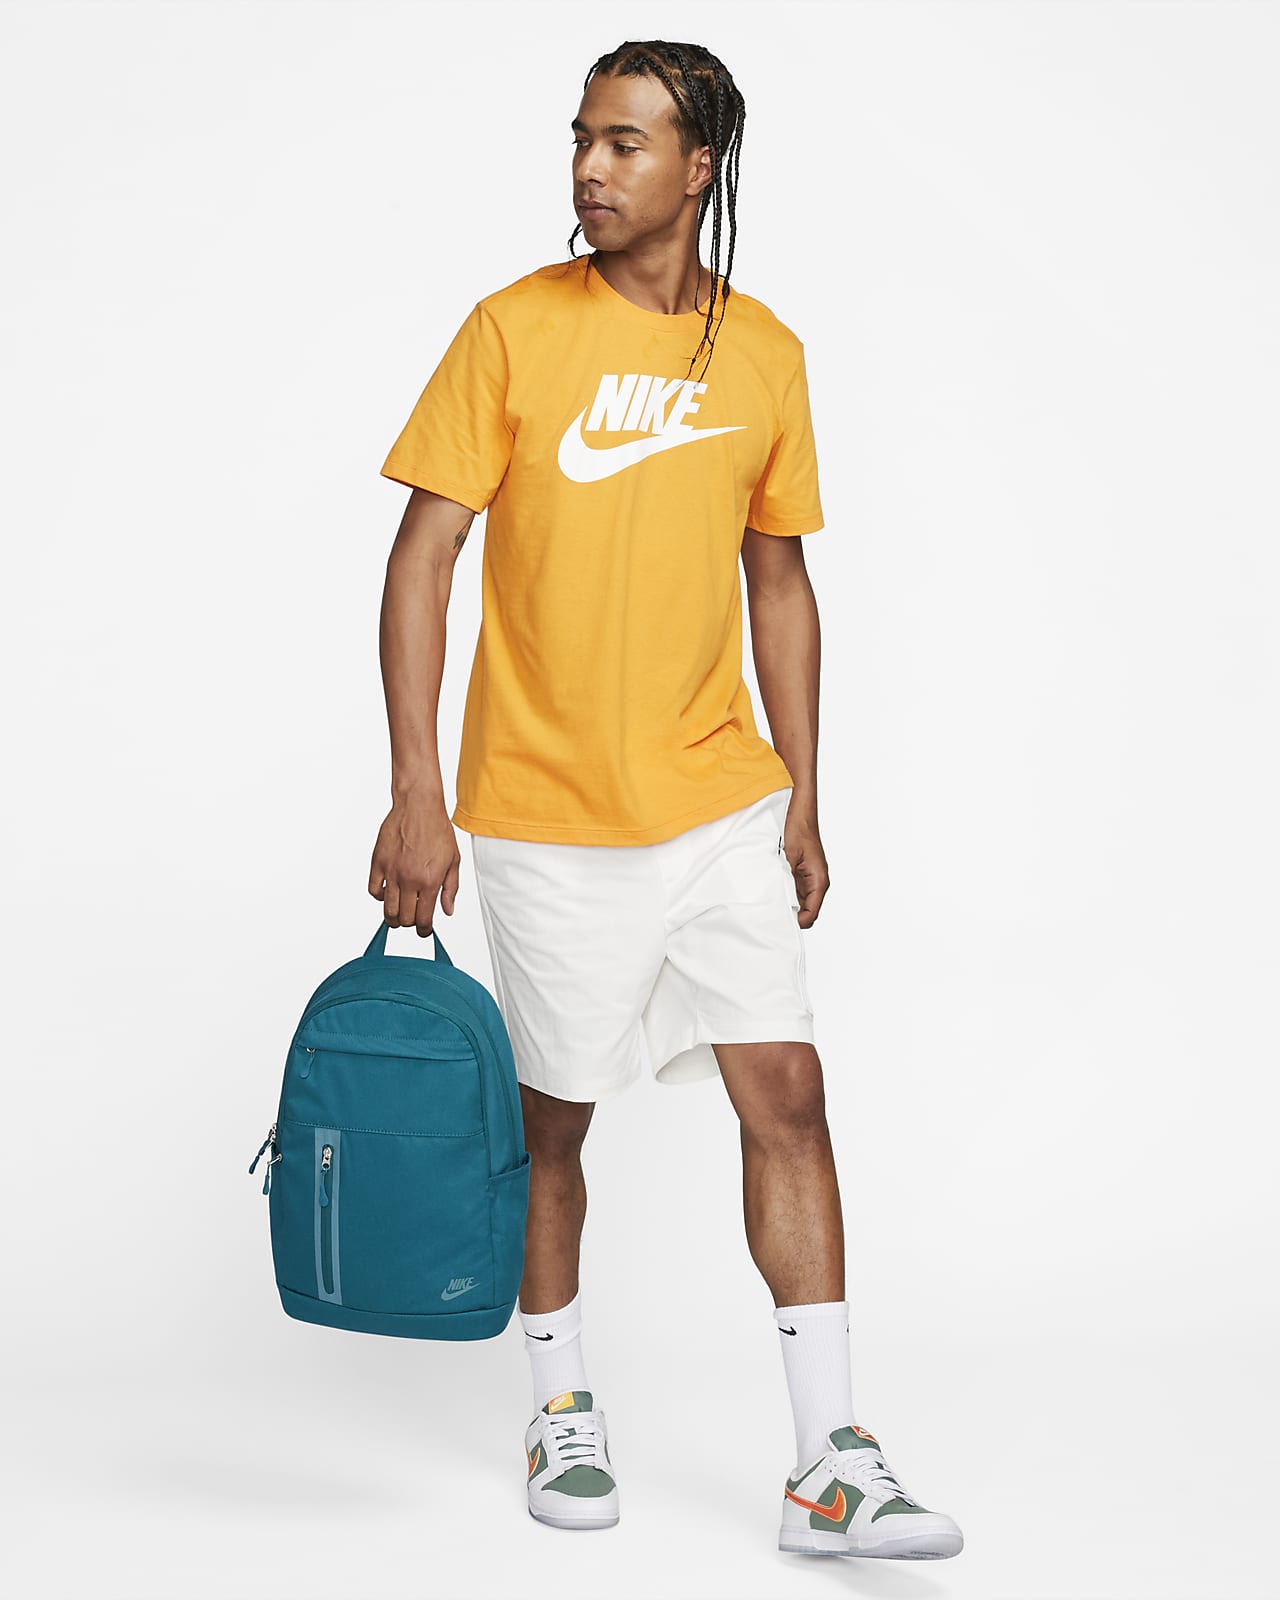 Nike Elemental Premium Backpack (21L).